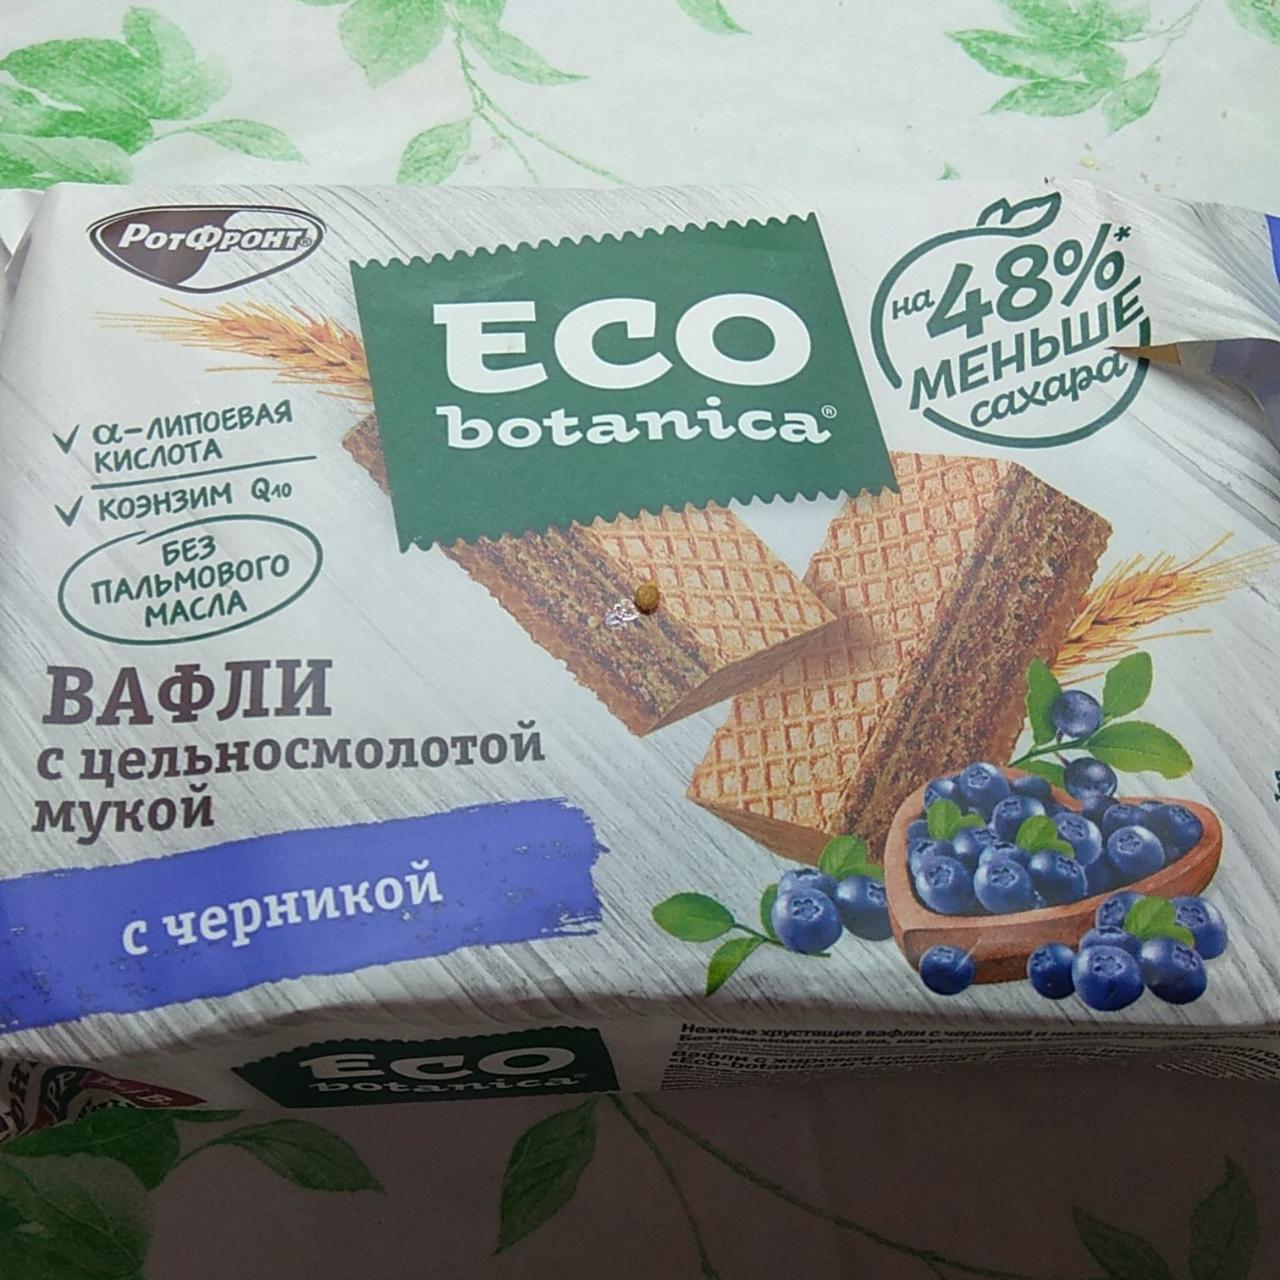 Фото - Вафли с цельносмолотой мукой с какао и семенами чиа Eco-botanica